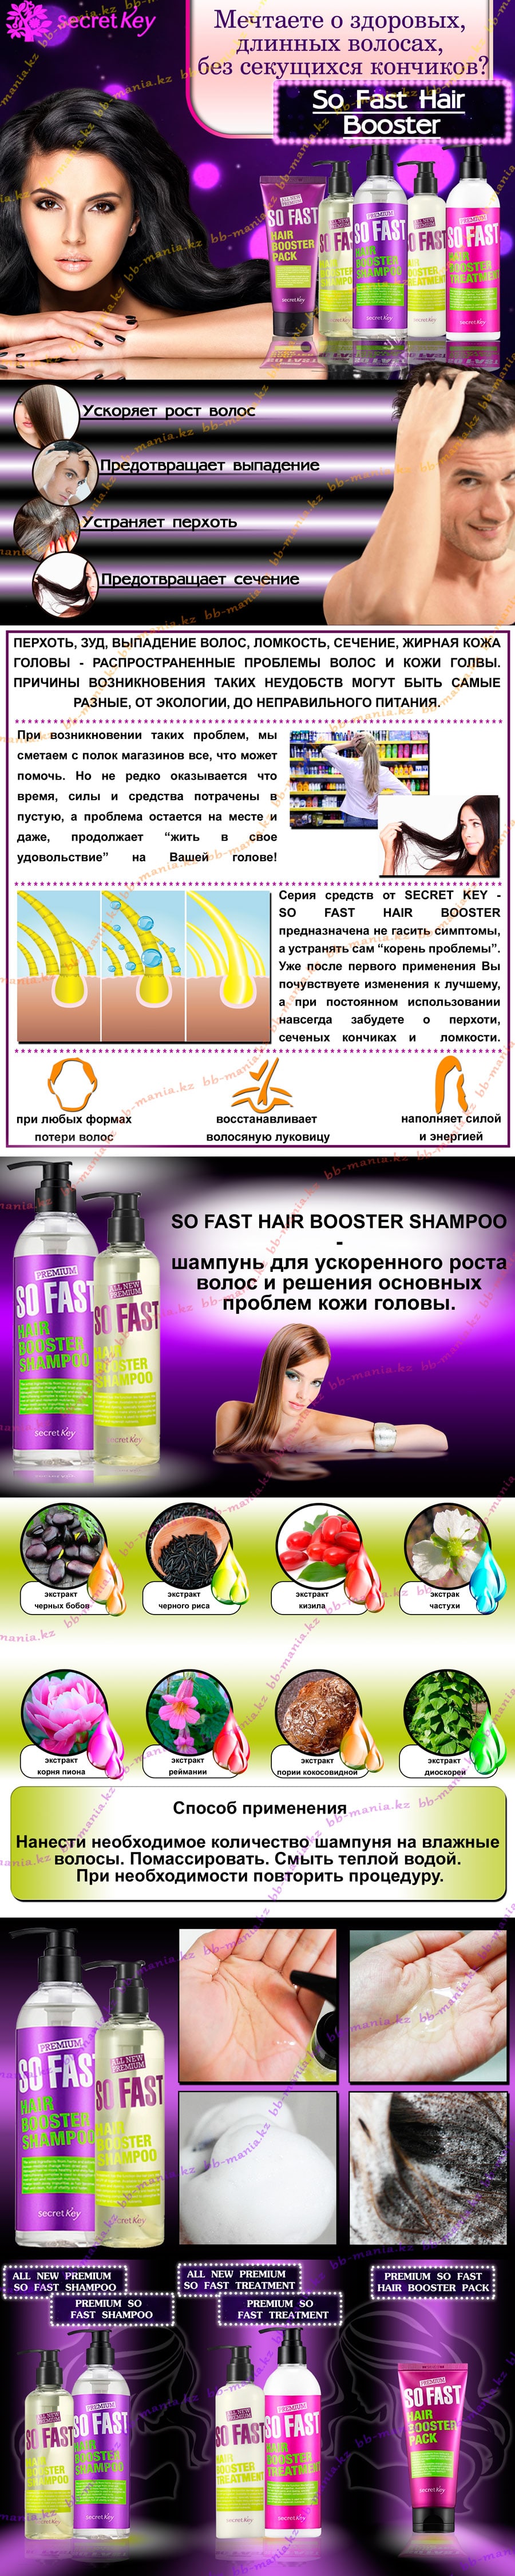 So-Fast-Hair-Booster-Shampoo-min